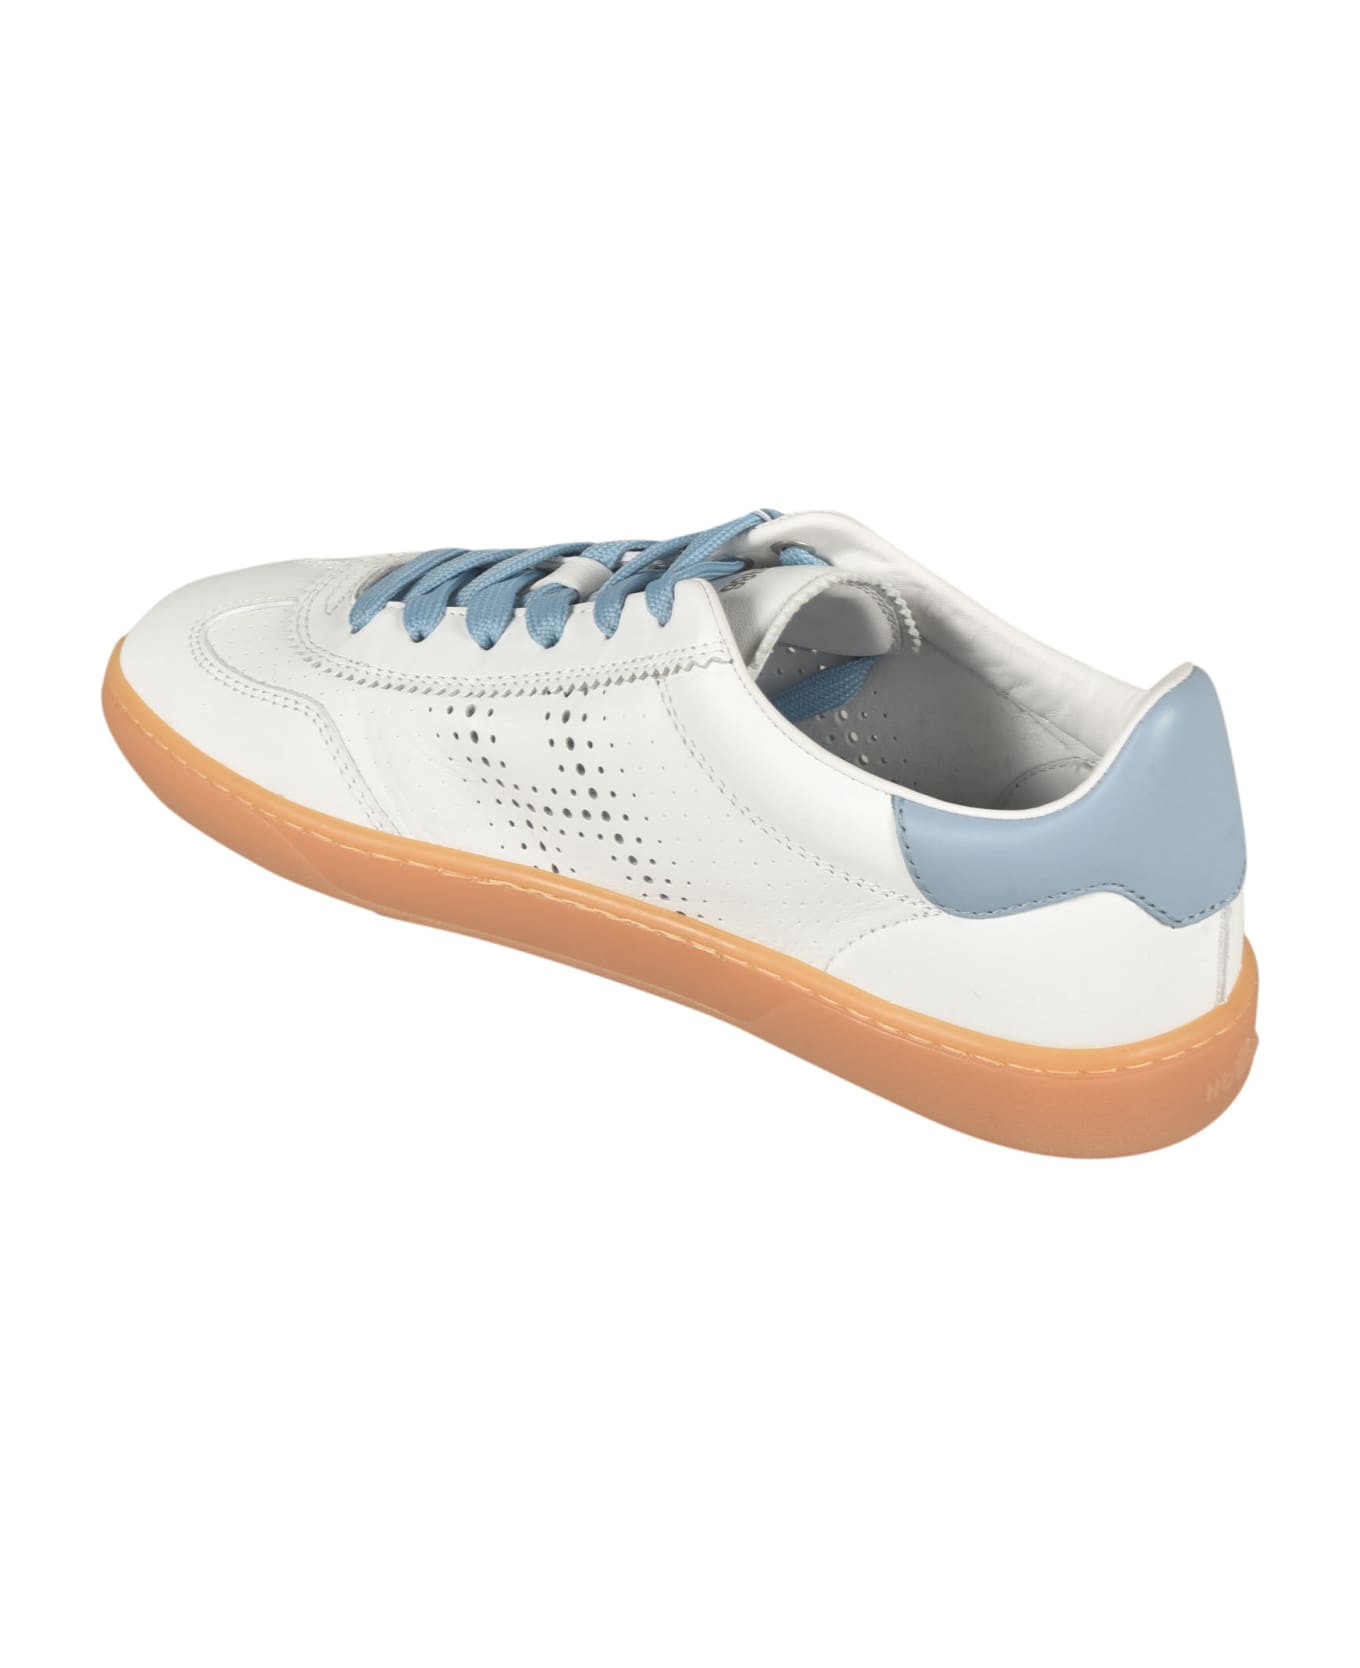 Hogan Perforated Low Sneakers - Sum Bianco + Azzurro